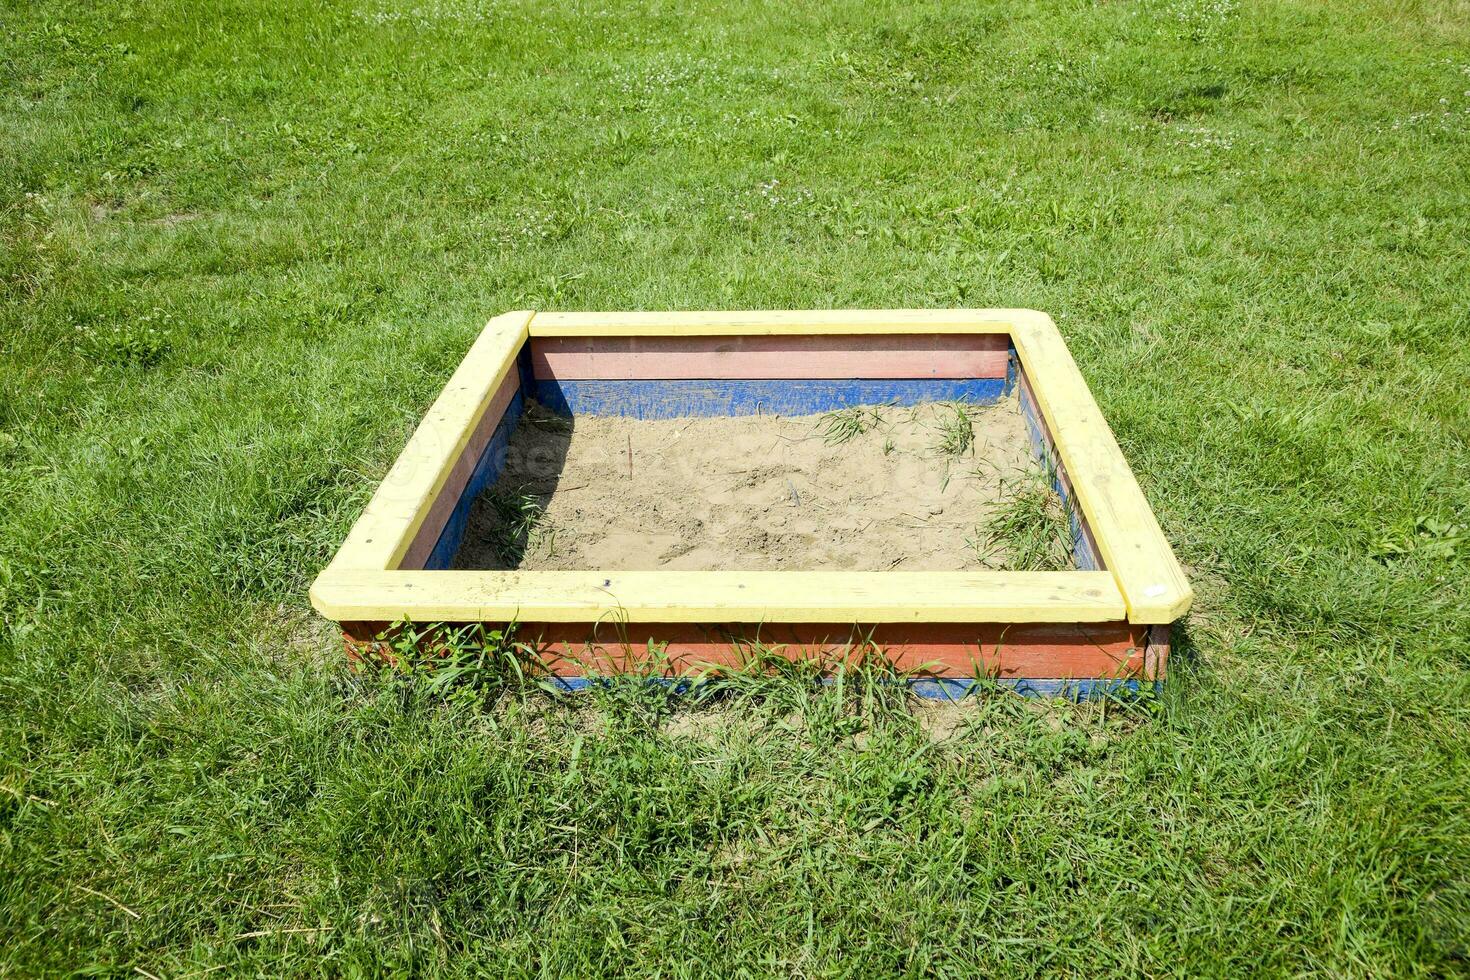 a Children's sandbox. photo